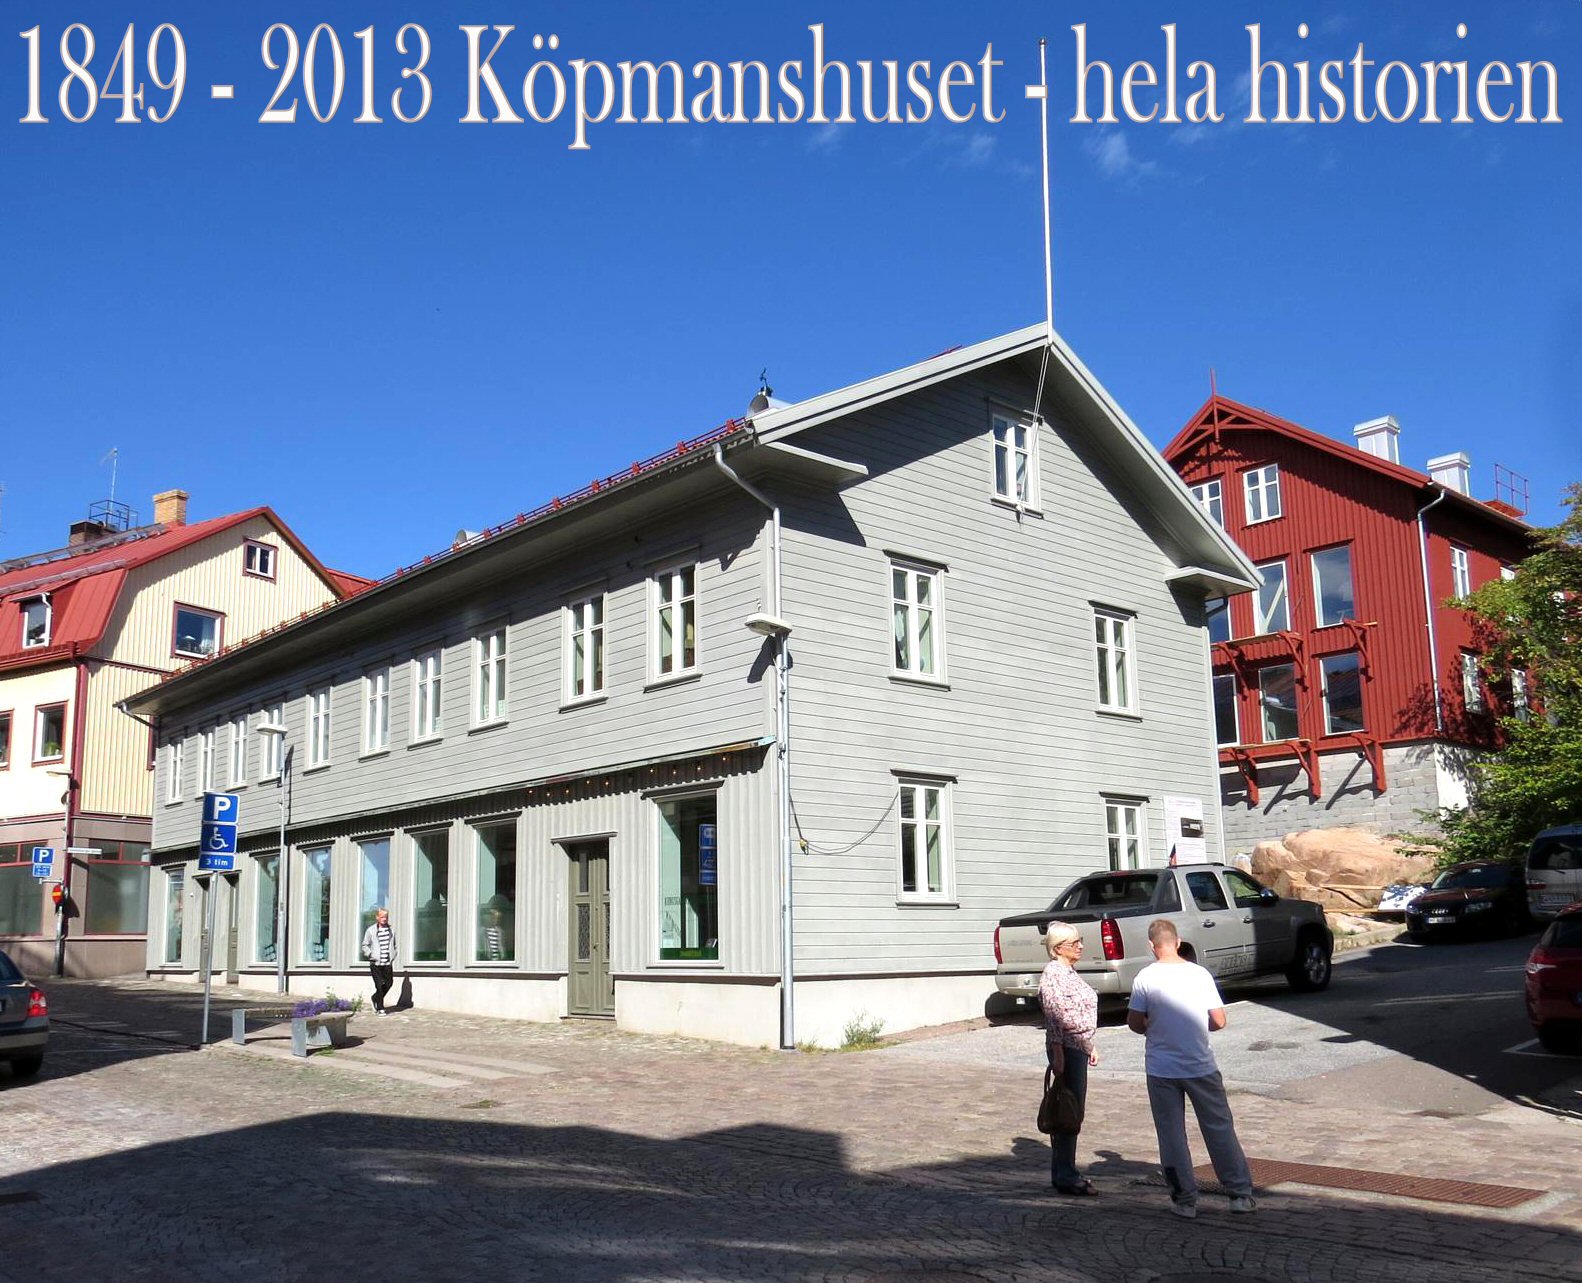 1849-2013 Köpmanshuset - hela historien